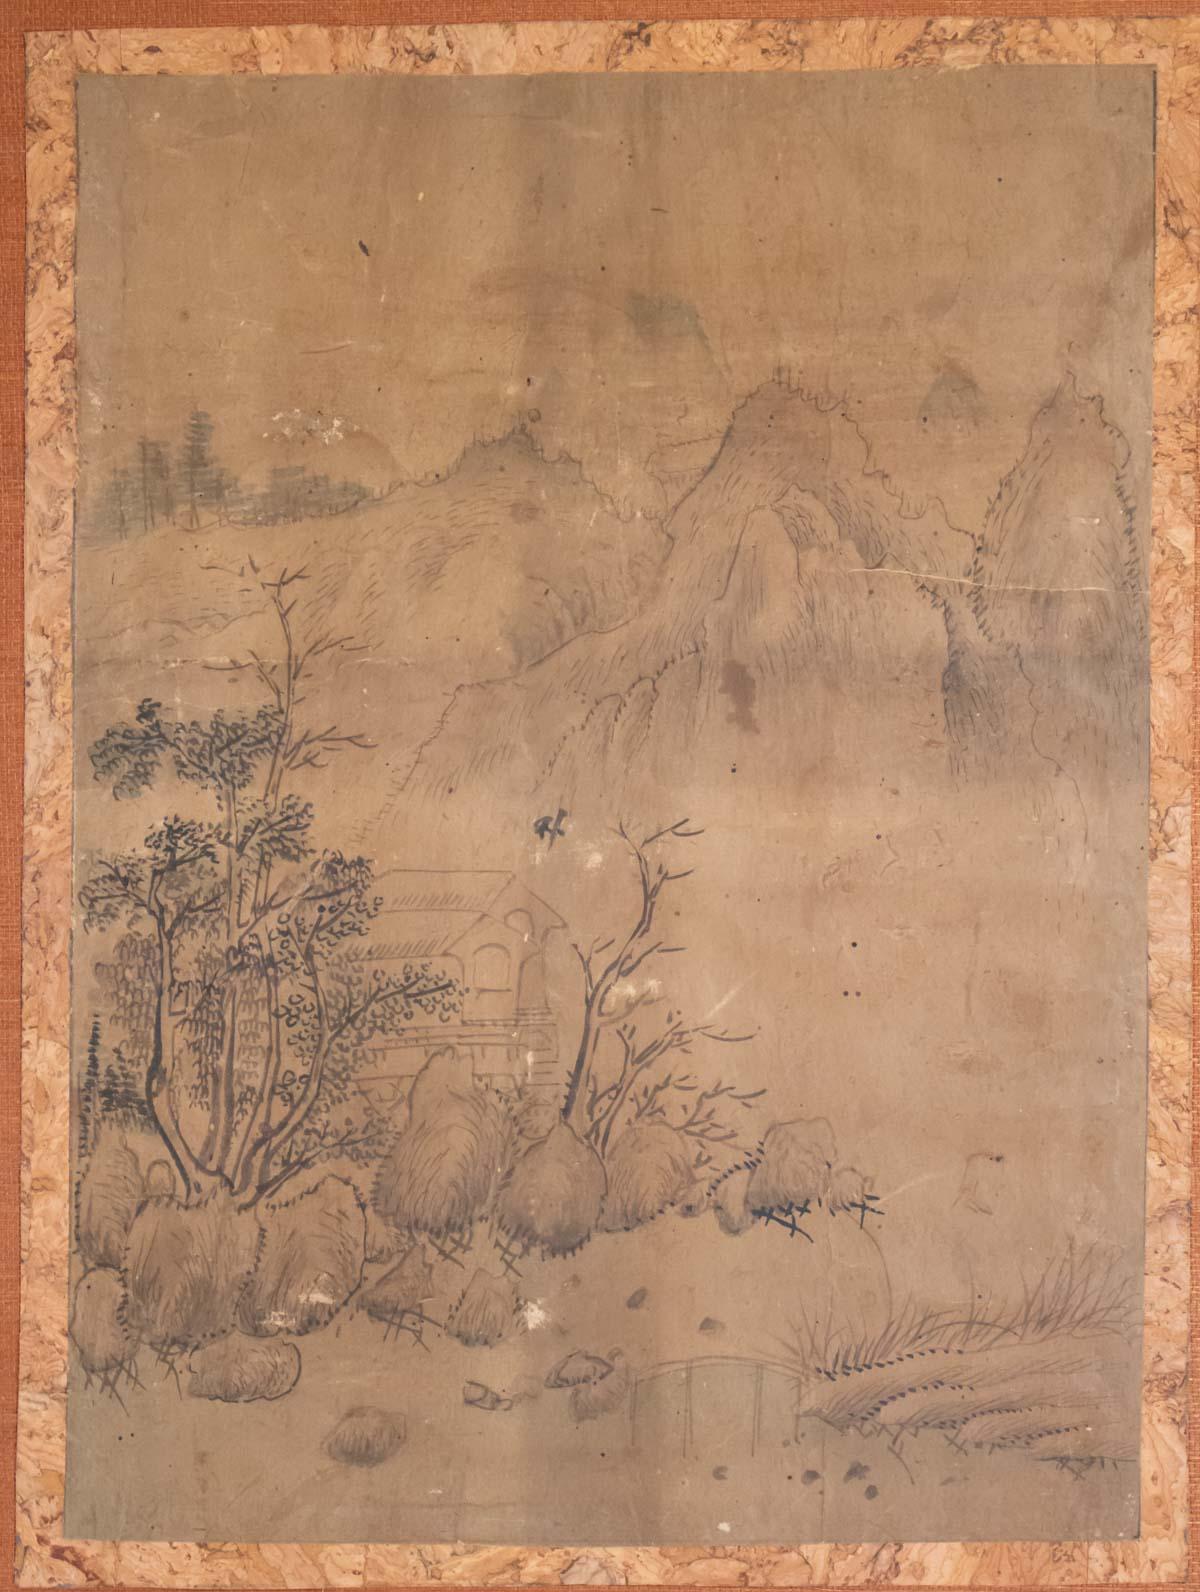 Dessin, Chine, XIXe siècle sur papier, Art Asia
Mesures du dessin : H 33.5cm, L 24.5cm
Carton H 50.5cm, L 41.5cm